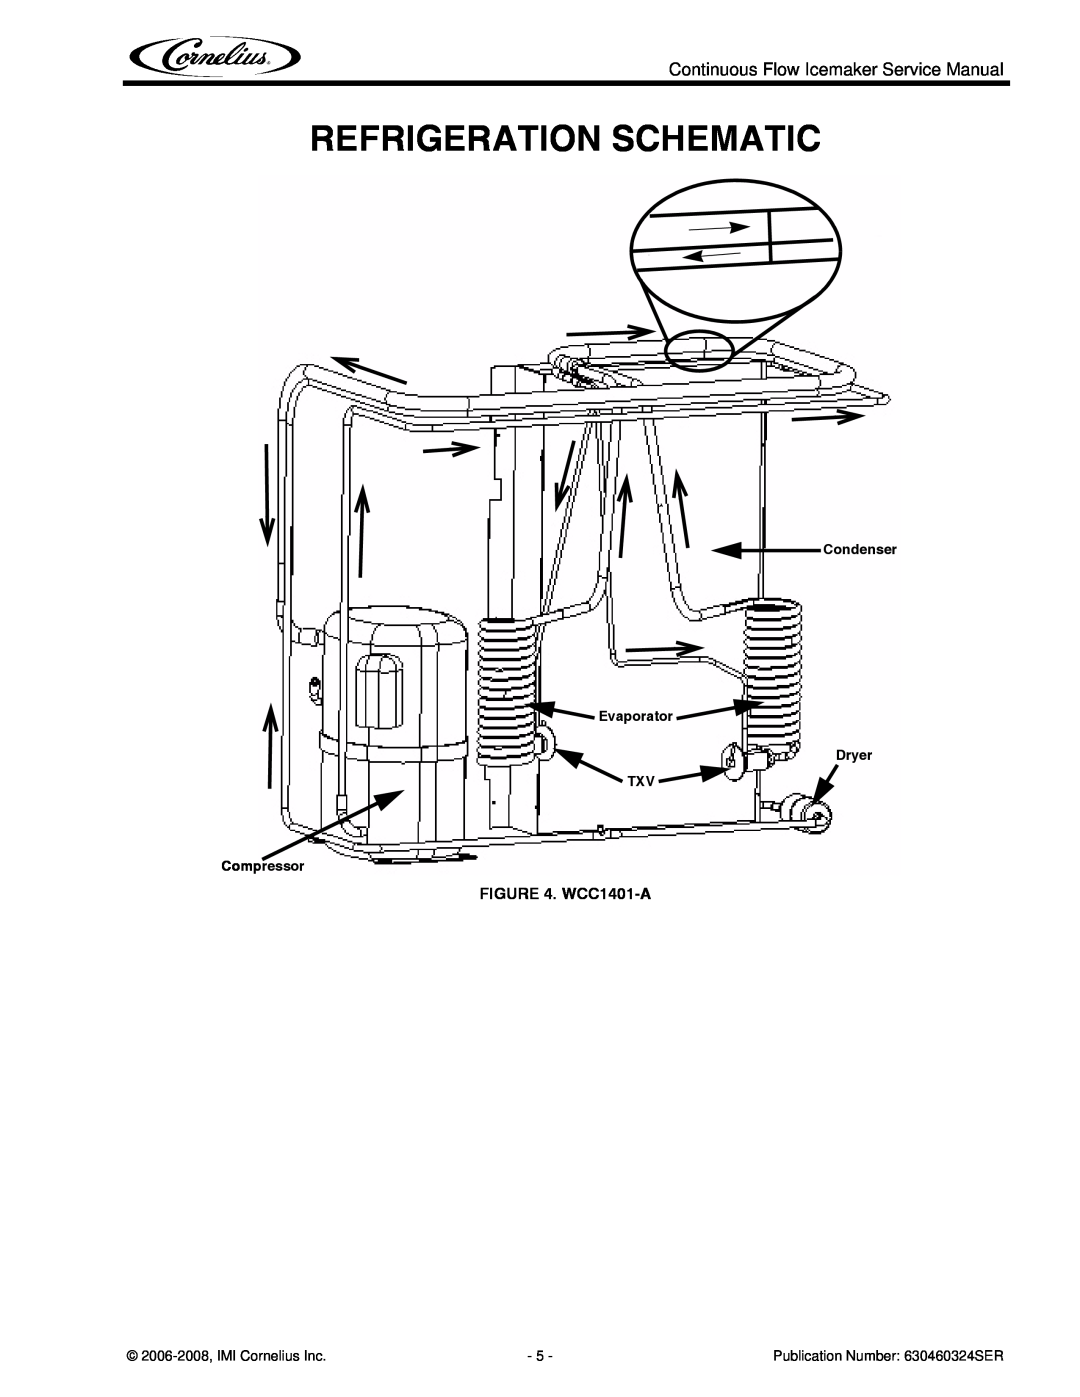 Cornelius WCC1401-A Refrigeration Schematic, Condenser Evaporator, TXV Compressor, Dryer, 2006-2008,IMI Cornelius Inc 